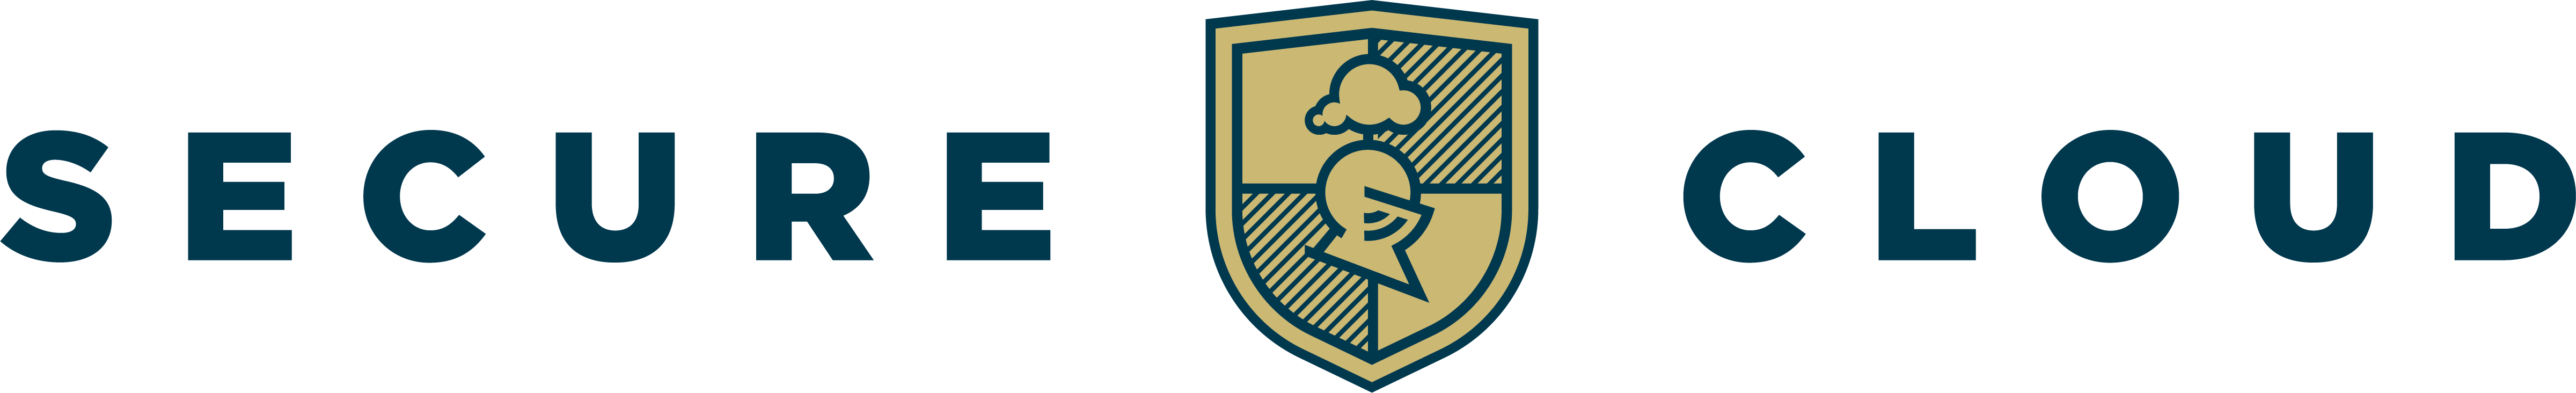 Secure Cloud logo sininen teksti